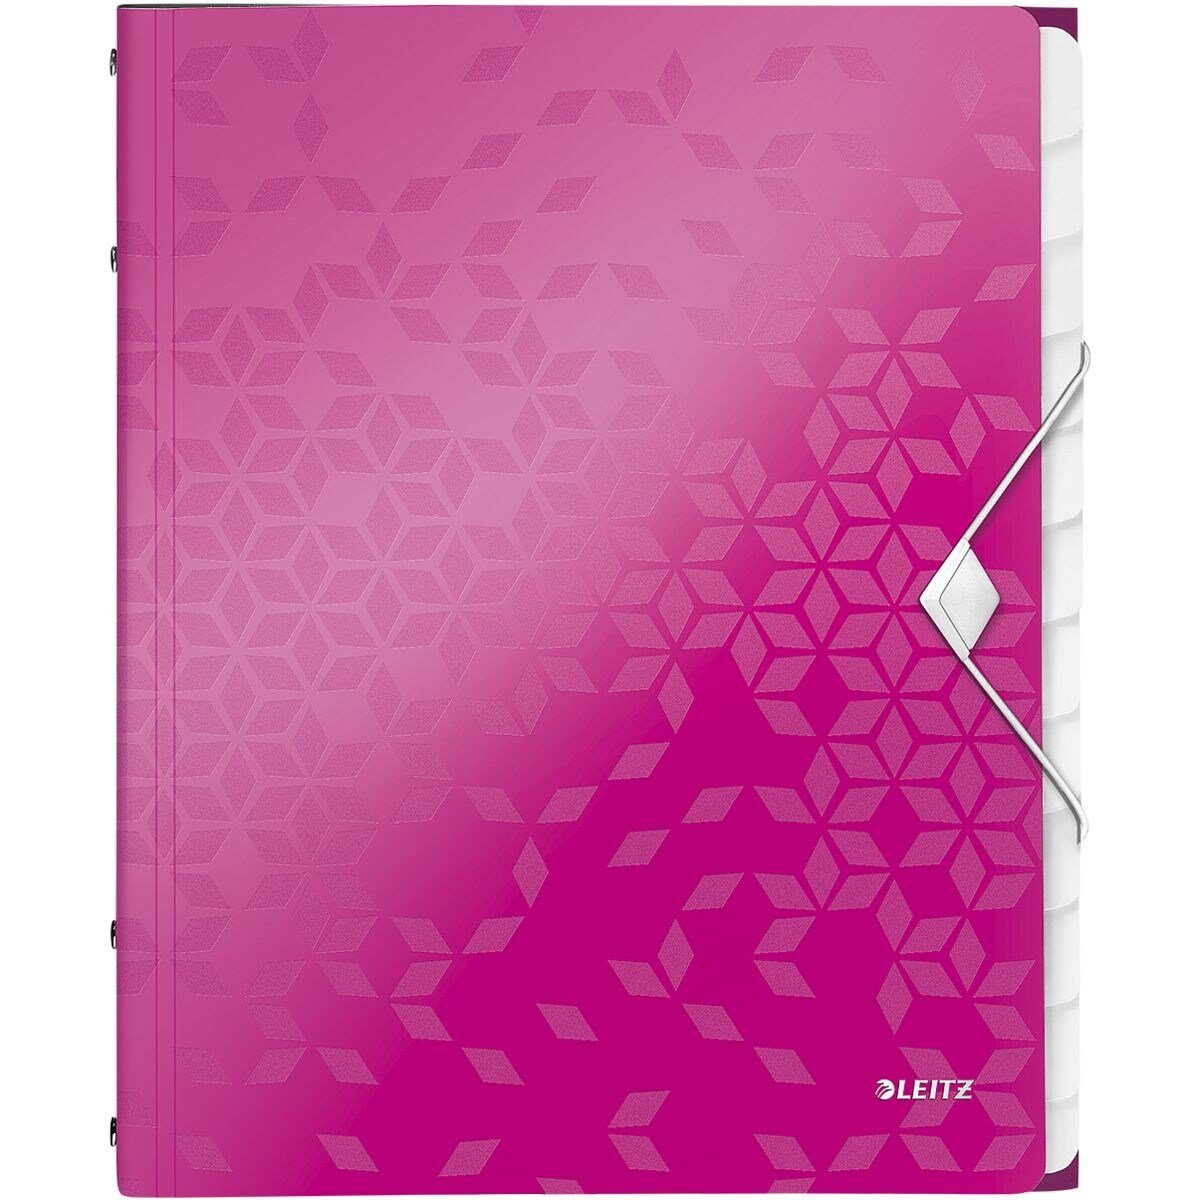 LEITZ Organisationsmappe WOW 4634, Ordnungsmappe mit 12 Fächern, A4 pink metallic